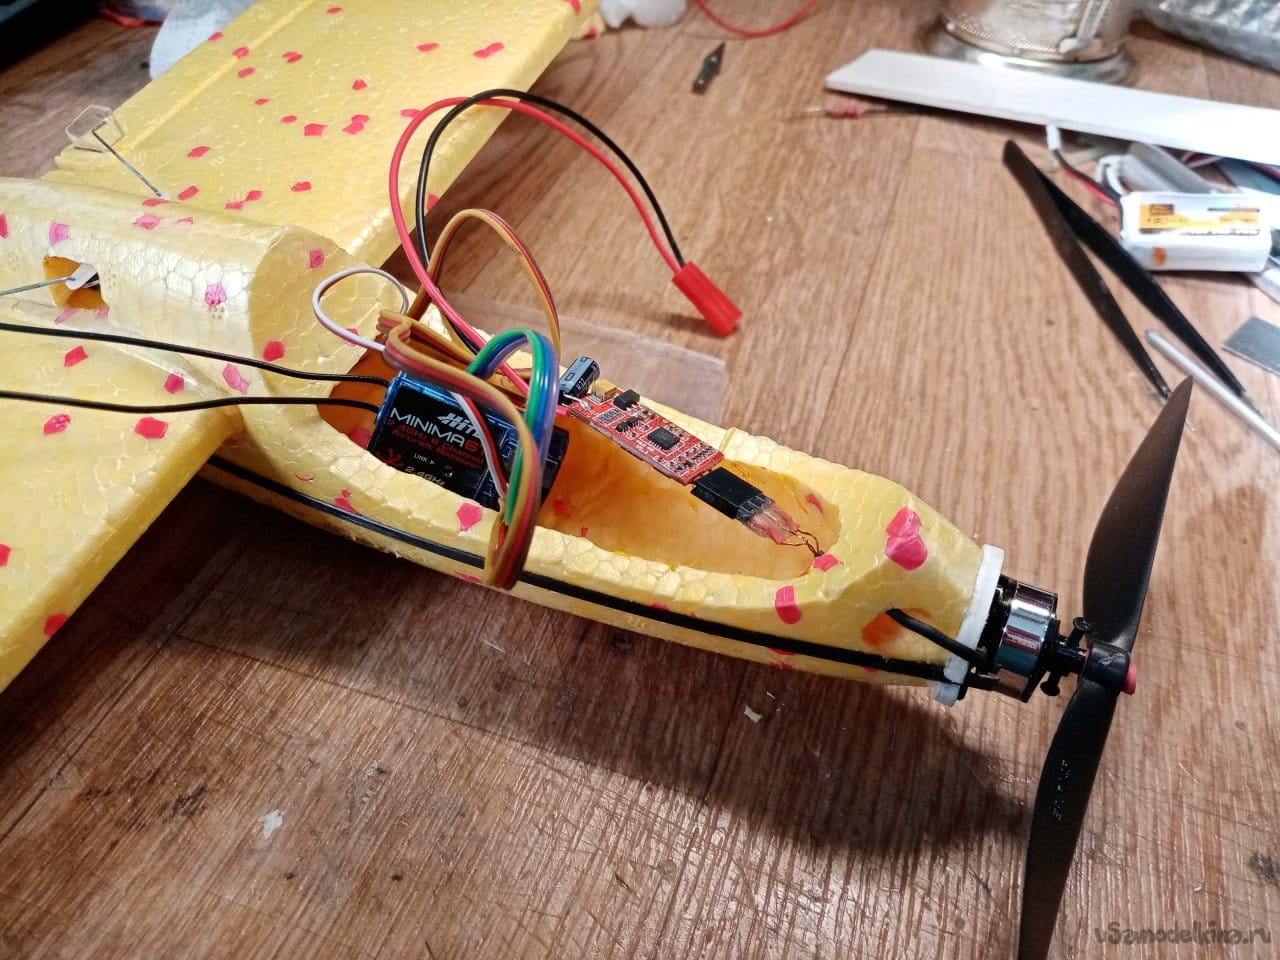 Изготовление летающего аппарата из детского планера